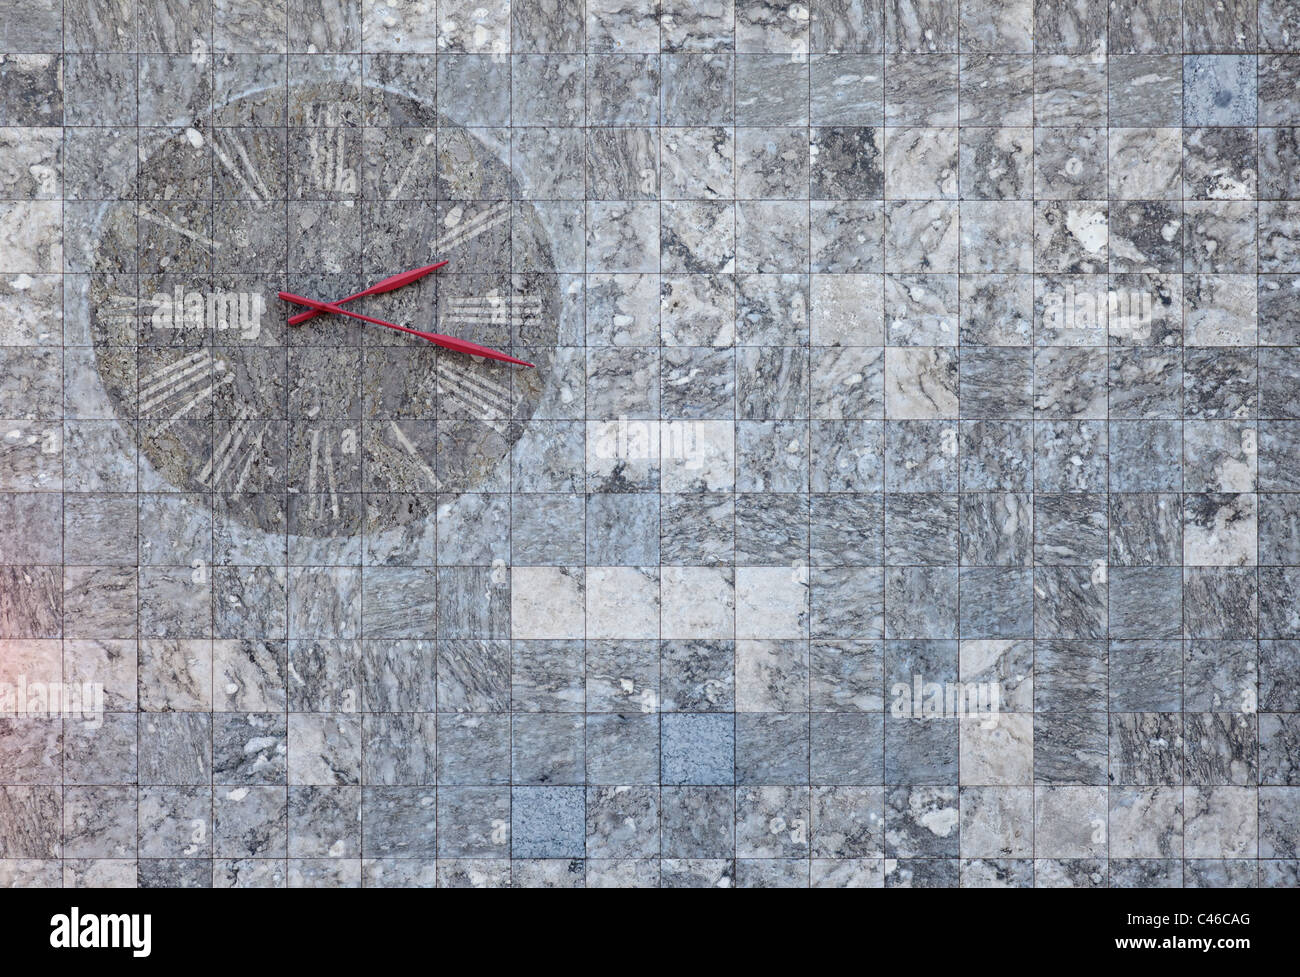 Un reloj de pared de mármol encontrado en Mainz, Alemania. Adecuado para imágenes con respecto al tiempo o textura bacjkgrounds. Foto de stock